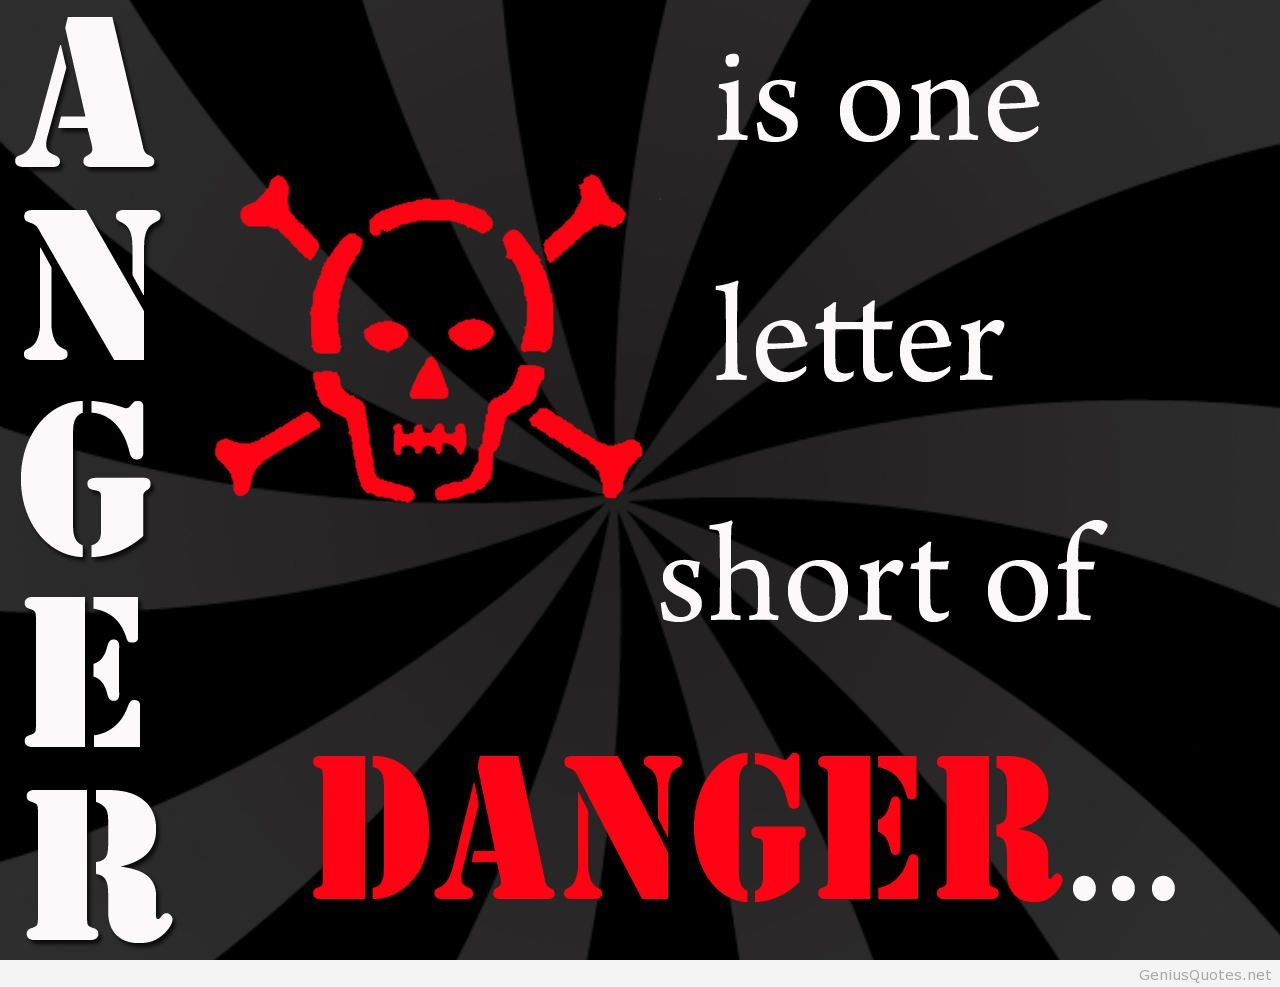 Anger is one letter short of danger